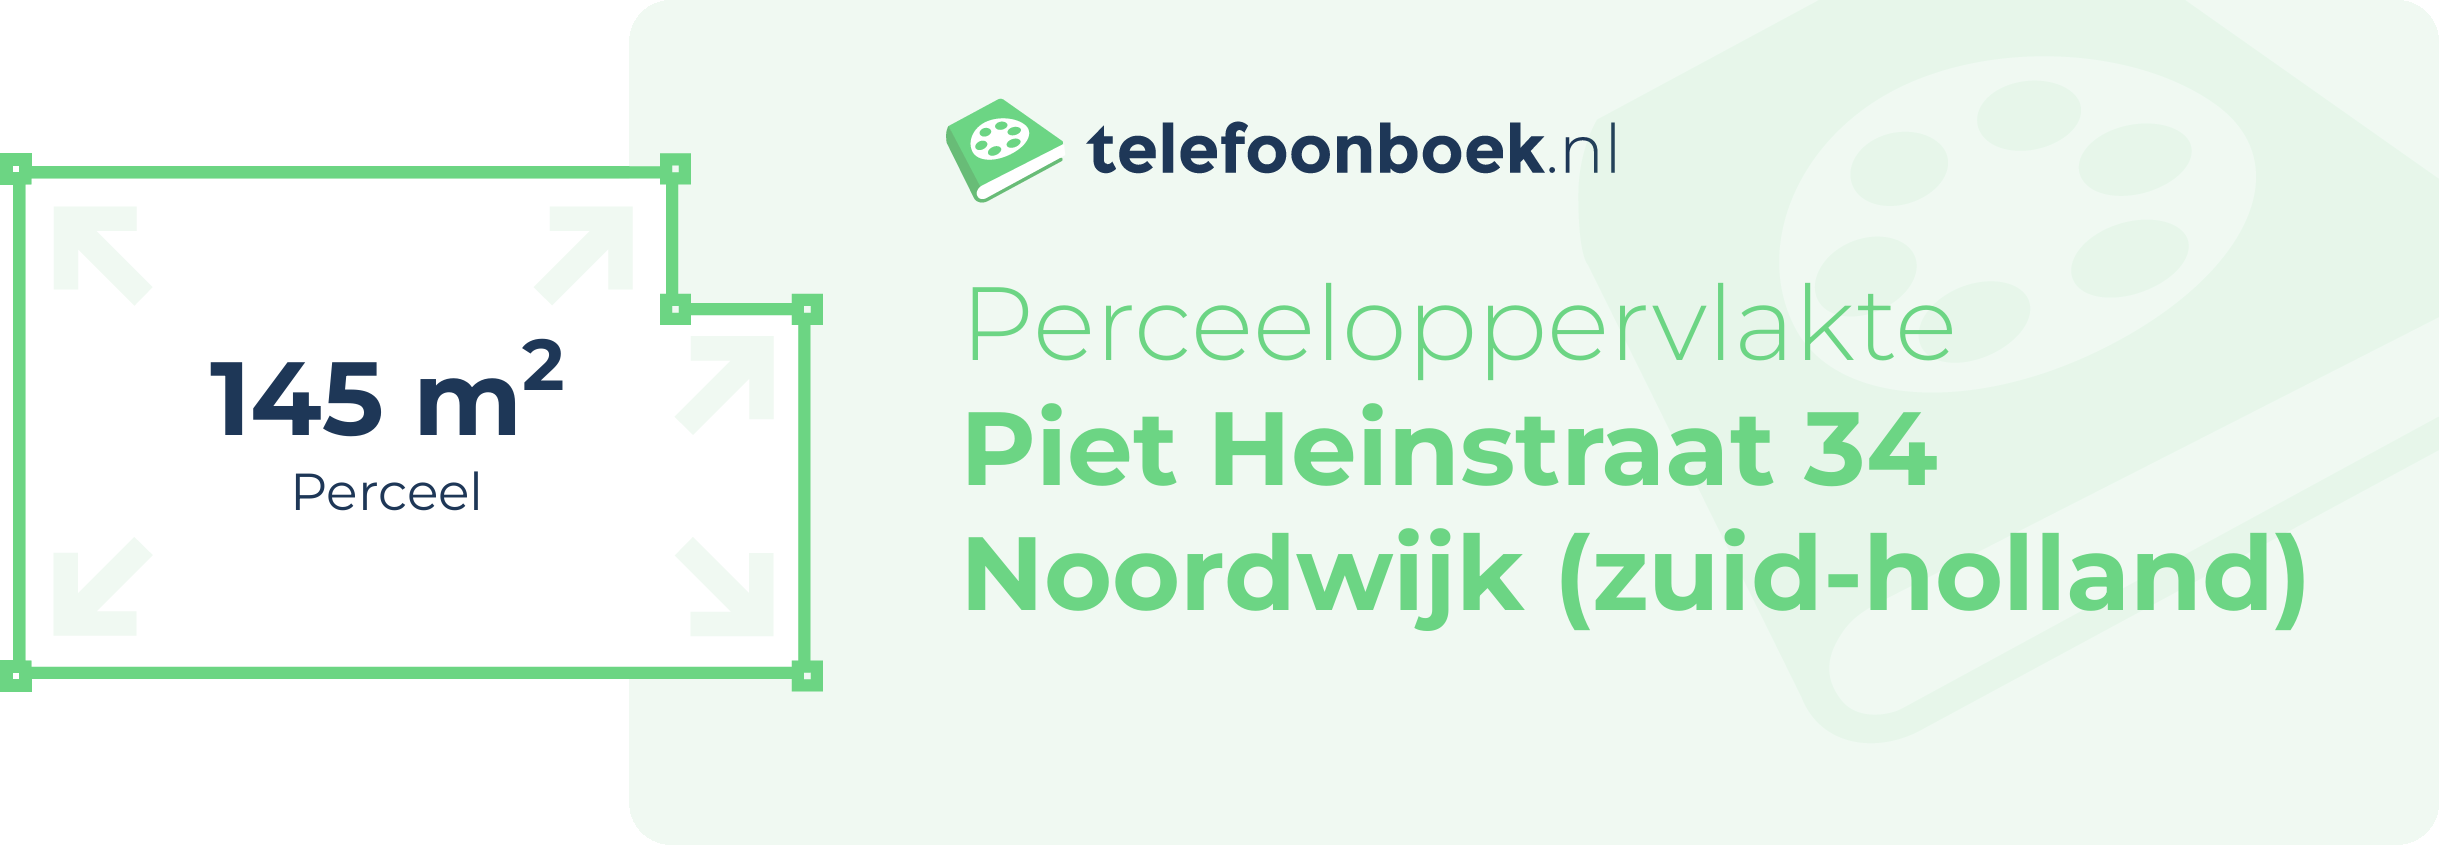 Perceeloppervlakte Piet Heinstraat 34 Noordwijk (Zuid-Holland)